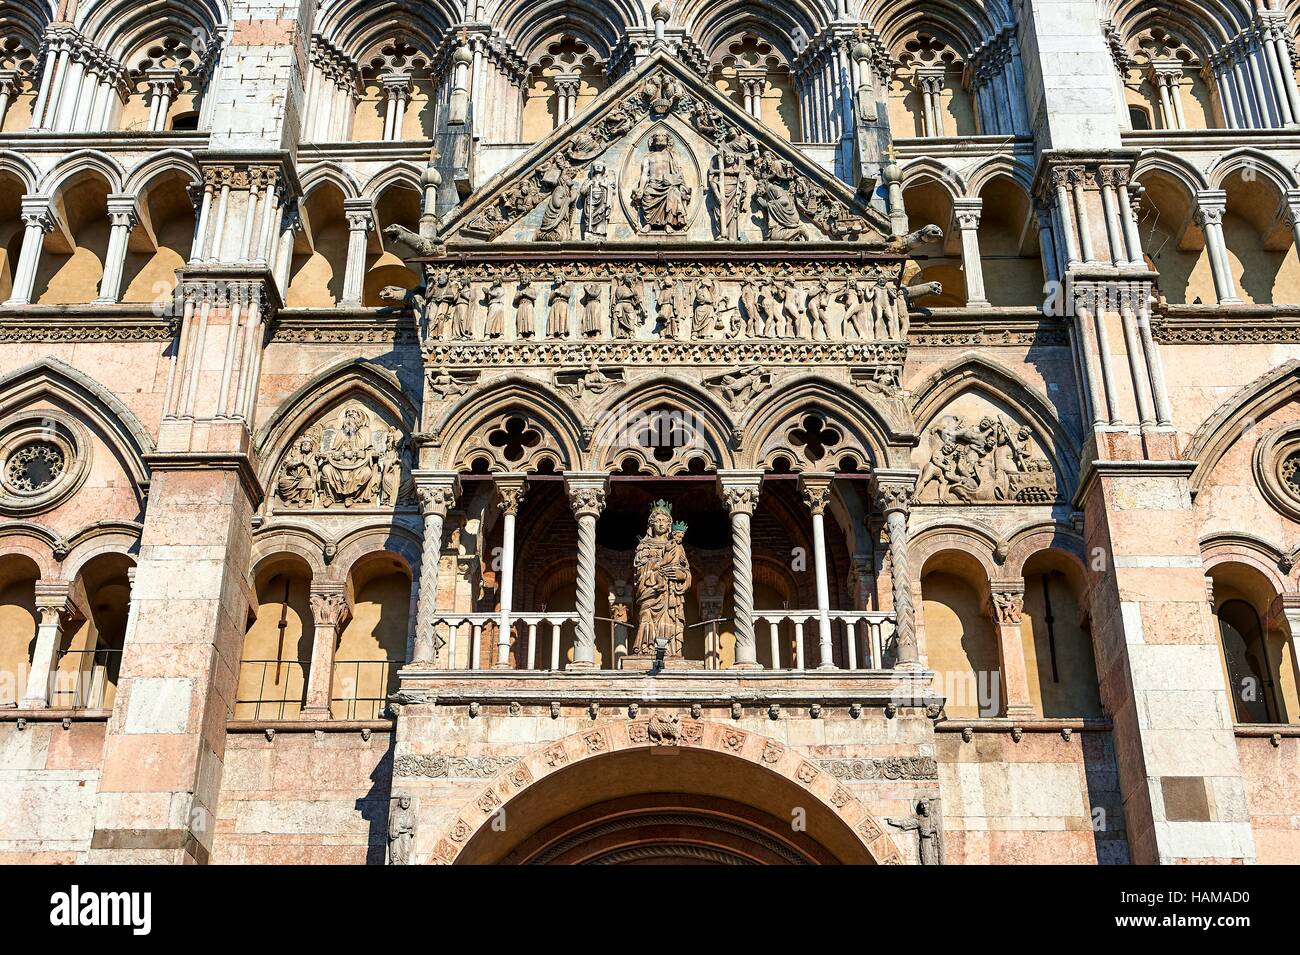 Romanesque facade of Ferrara Cathedral, Ferrara, Emilia-Romagna, Italy Stock Photo